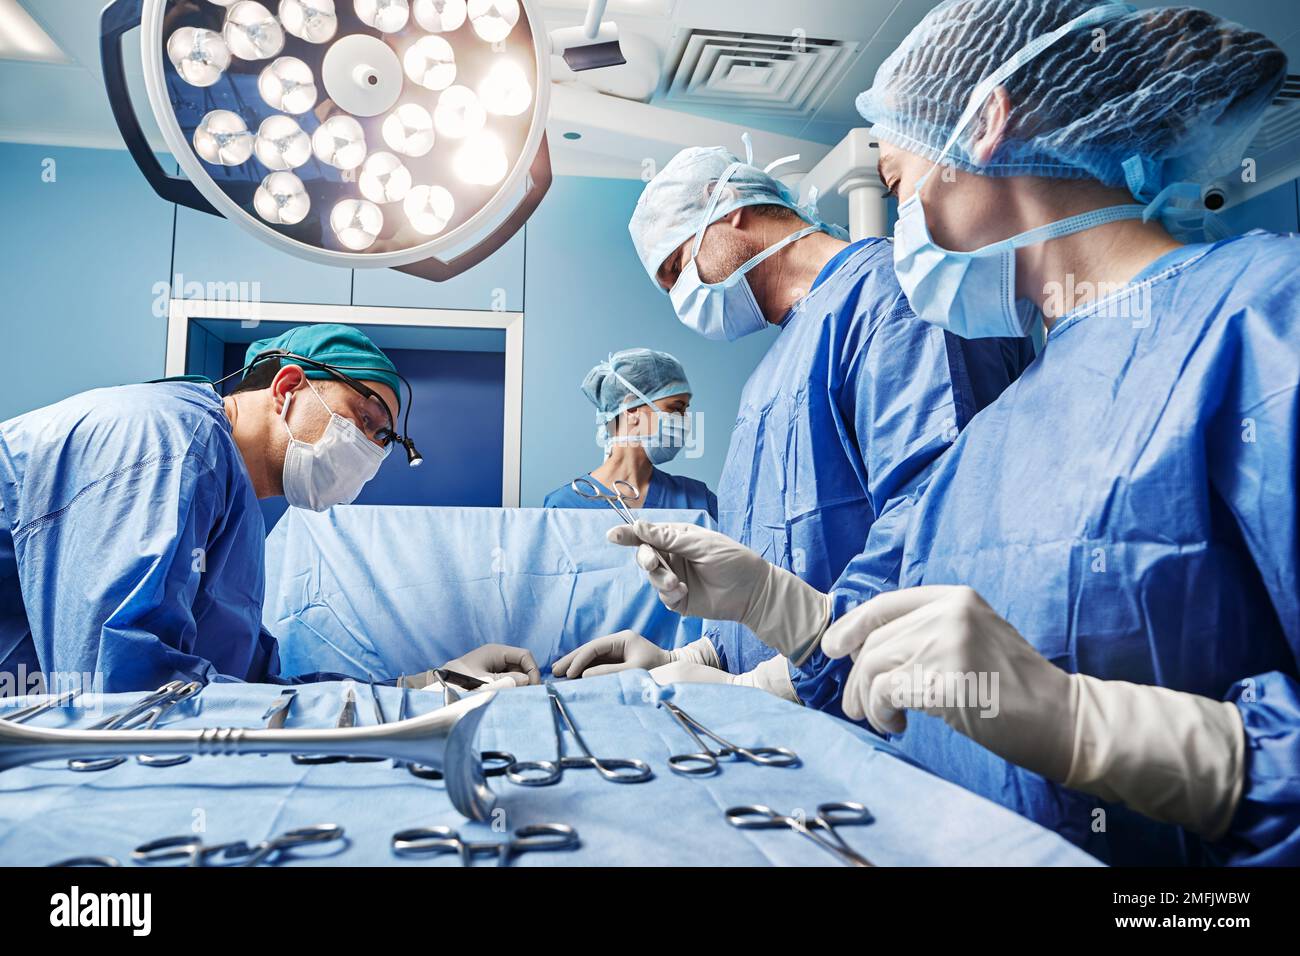 Chirurgische Krankenschwester gibt dem männlichen Chirurgen während der Operation im Operationssaal eine Operationsschere. Chirurg-Team Stockfoto